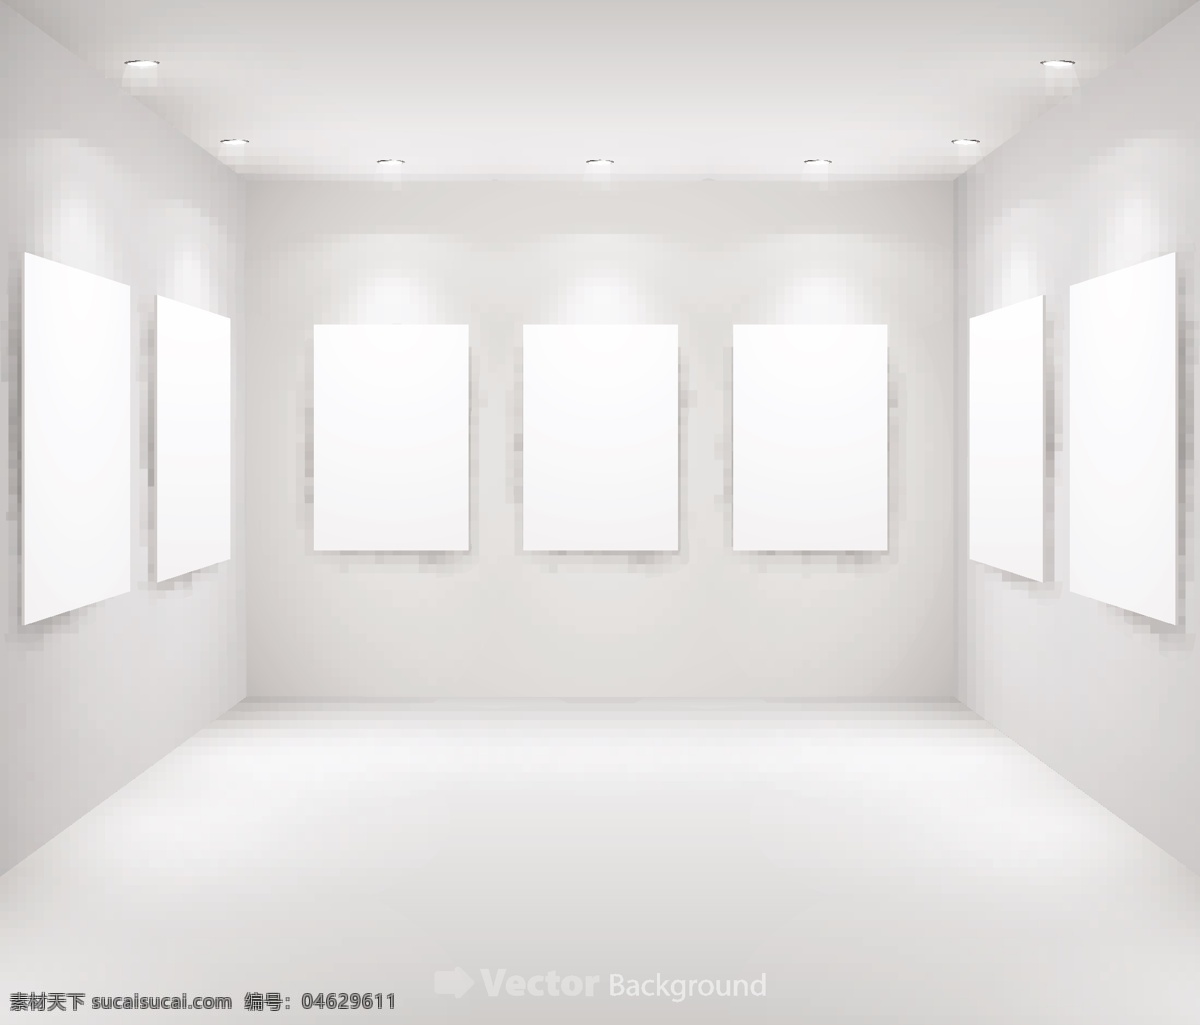 画廊 展示 背景 矢量 三 背景灯 灯光 格式 墙面 矢量素材 展板 关键字 矢量图 其他矢量图